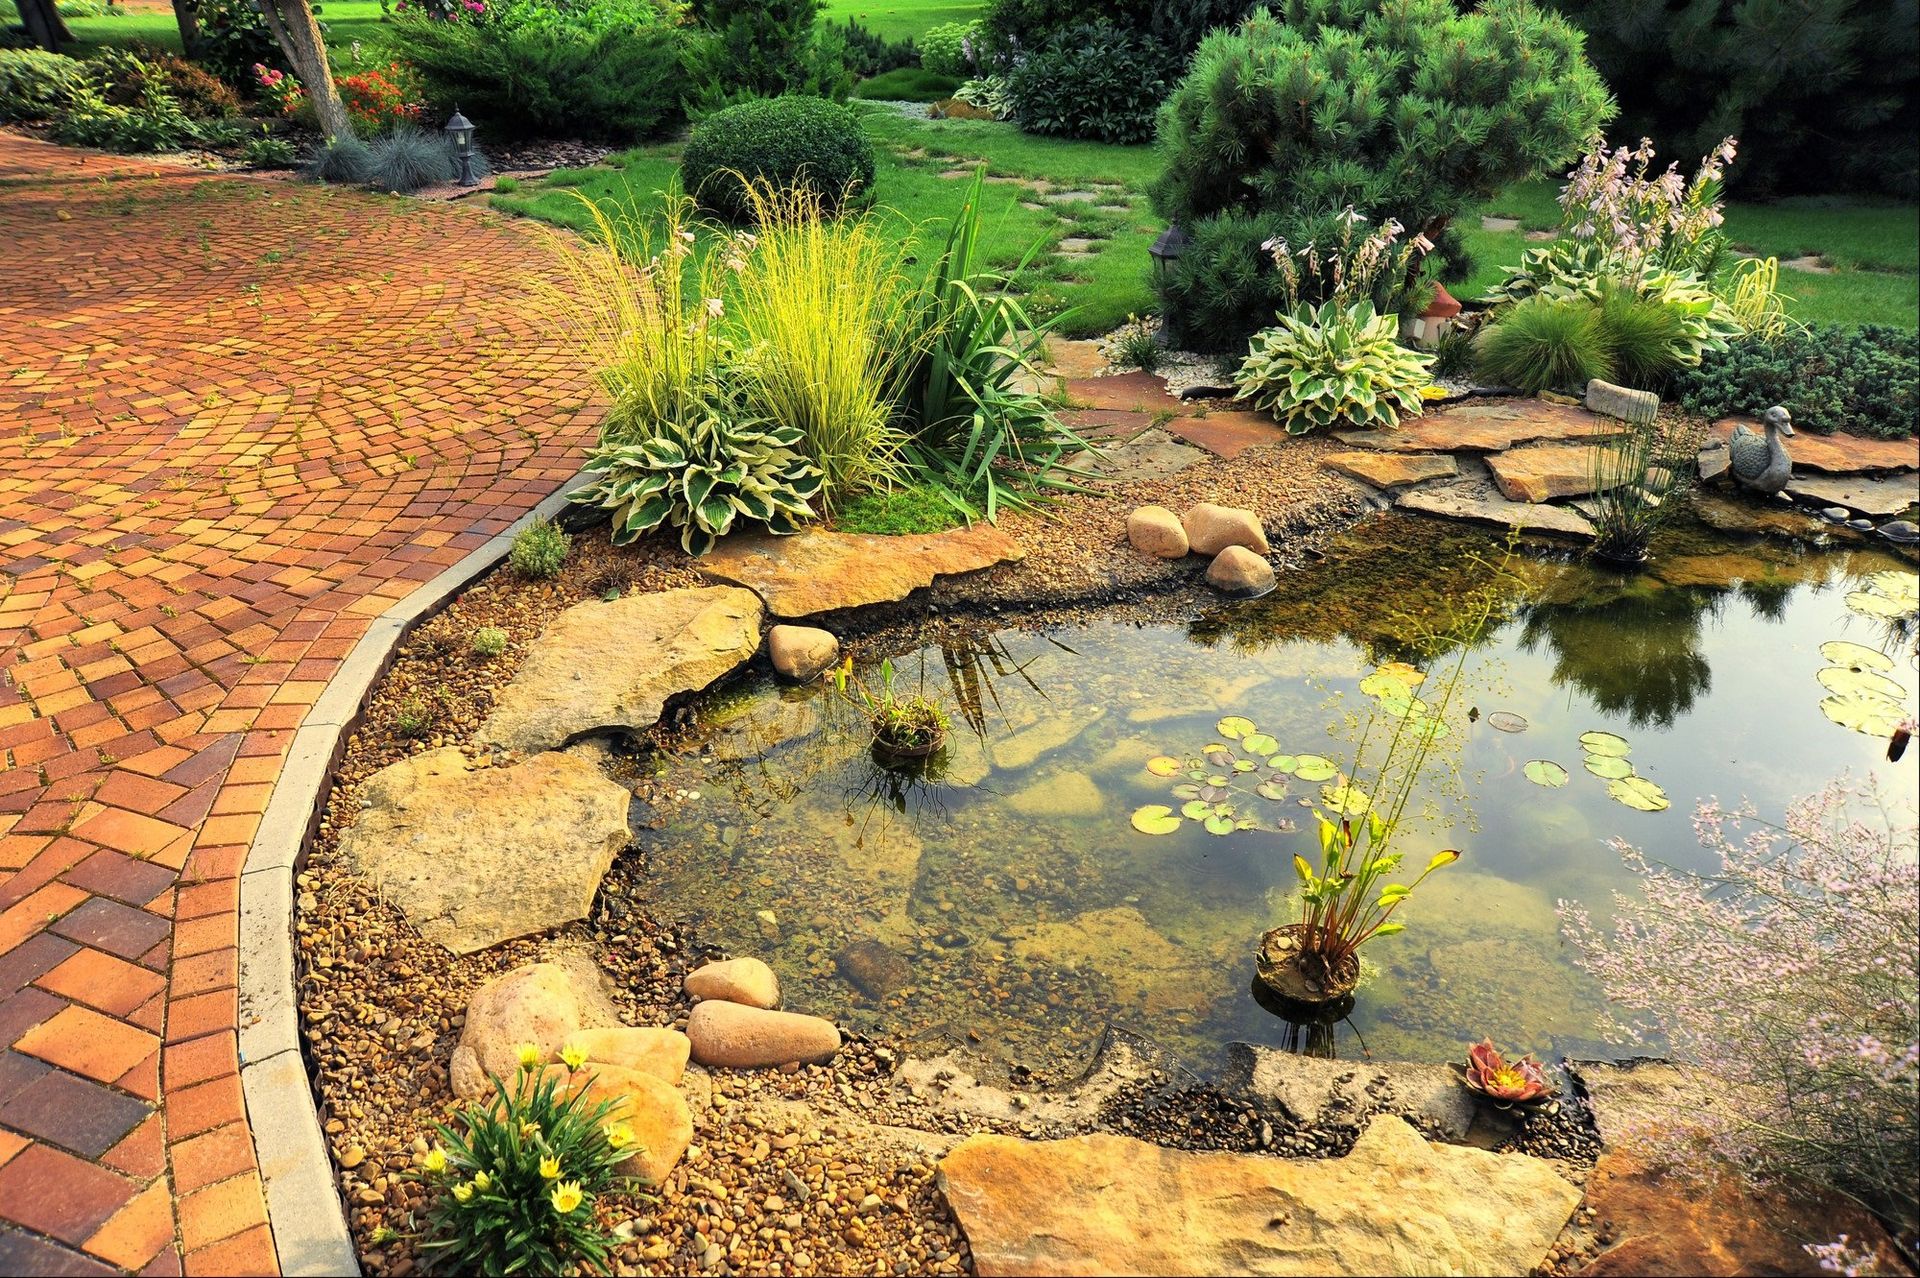 Terracotta paving around a garden pond